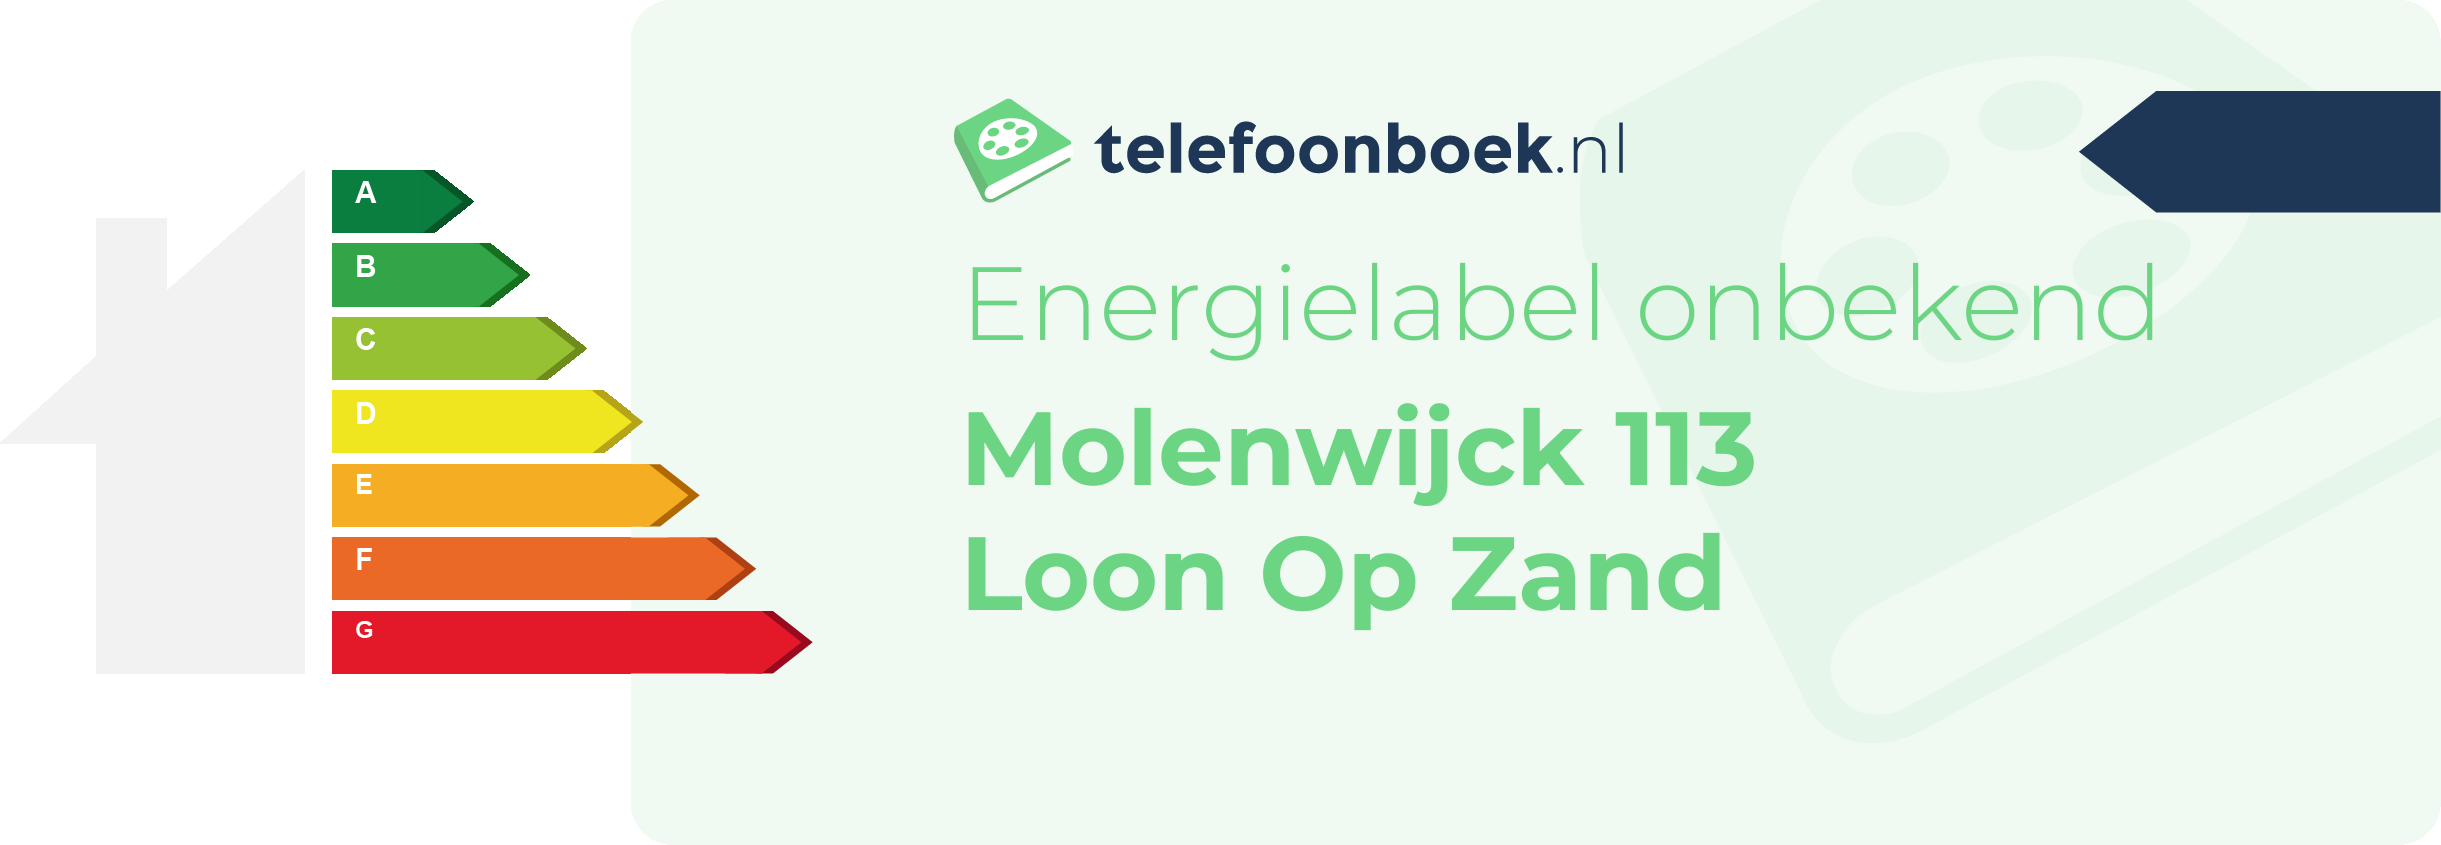 Energielabel Molenwijck 113 Loon Op Zand